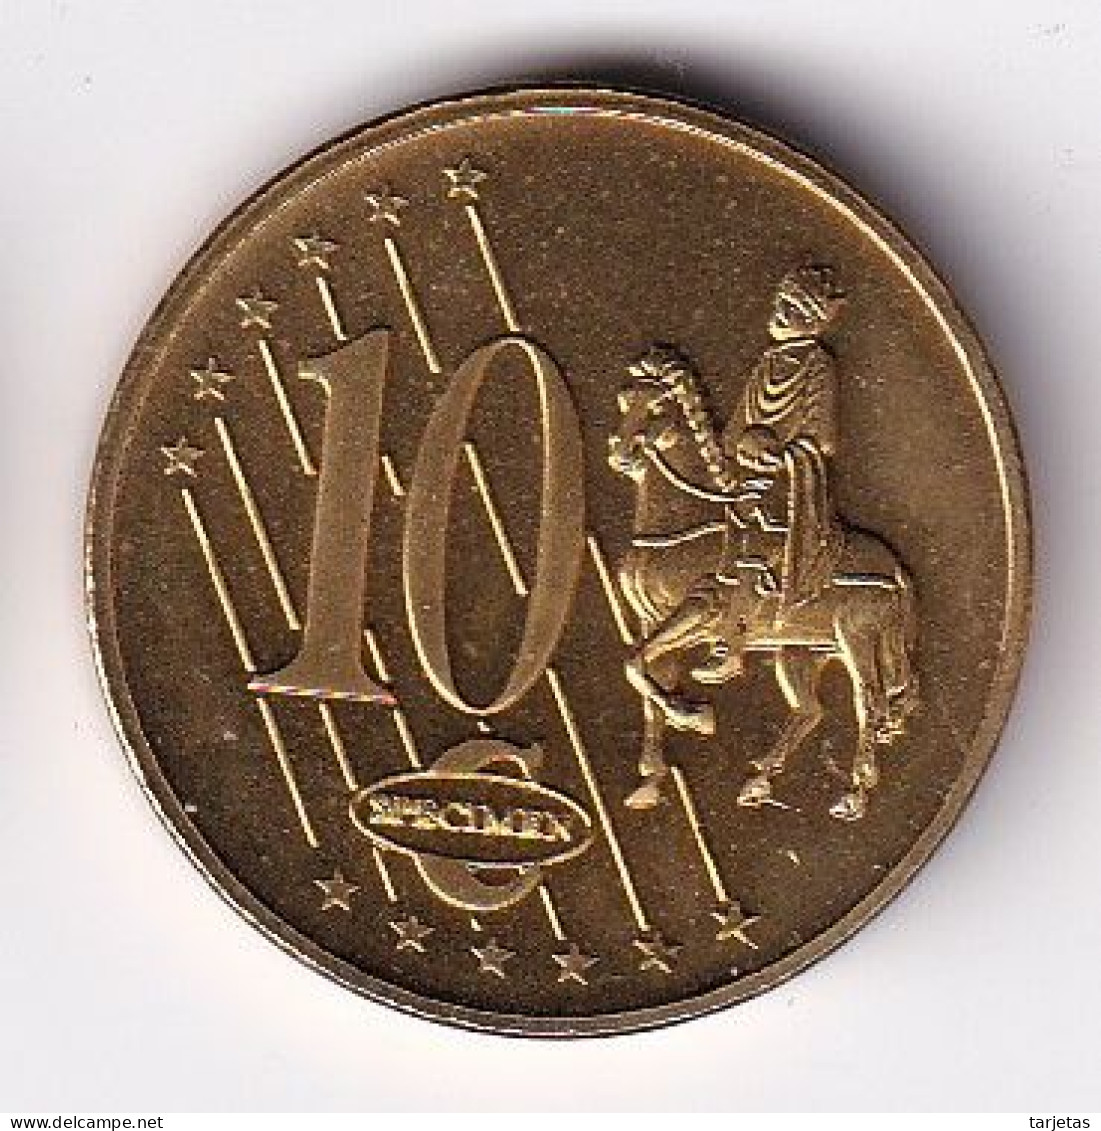 MONEDA DE PRUEBA DE SERBIA DE 10 CENTIMOS DE EURO DEL AÑO 2004 (COIN) - Serbie